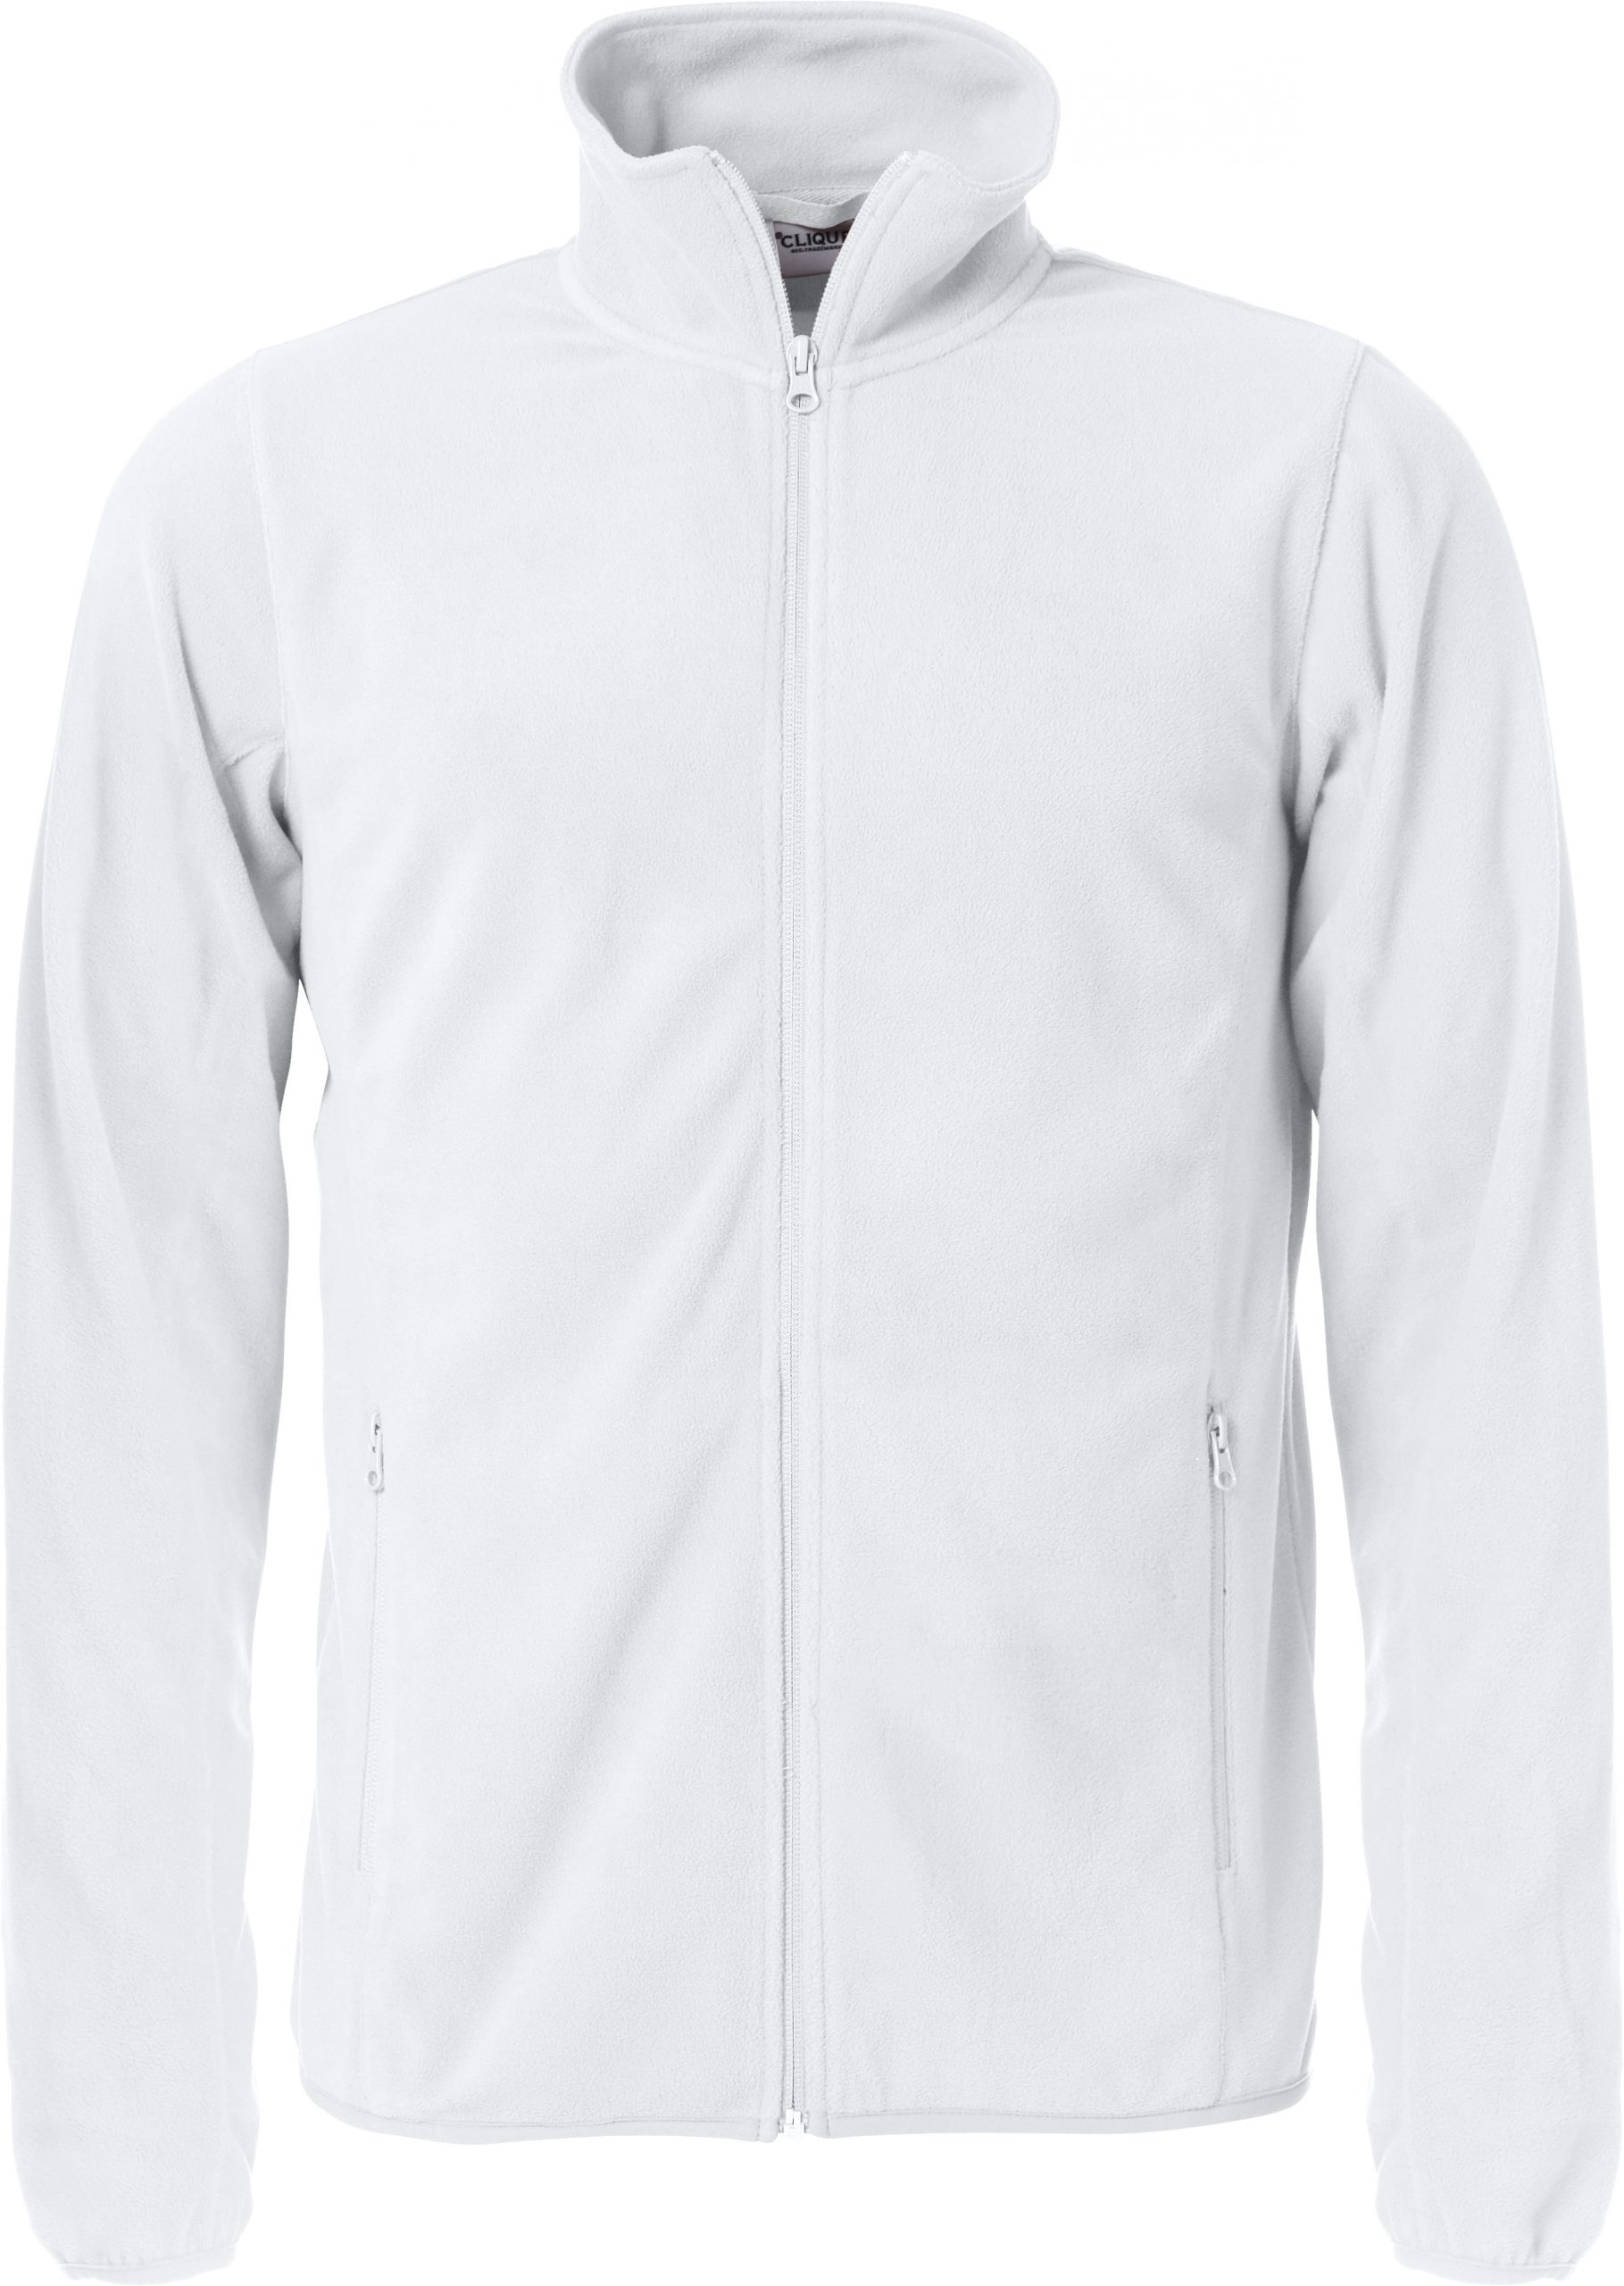 Clique Basic Micro Fleece Jacket valkoinen